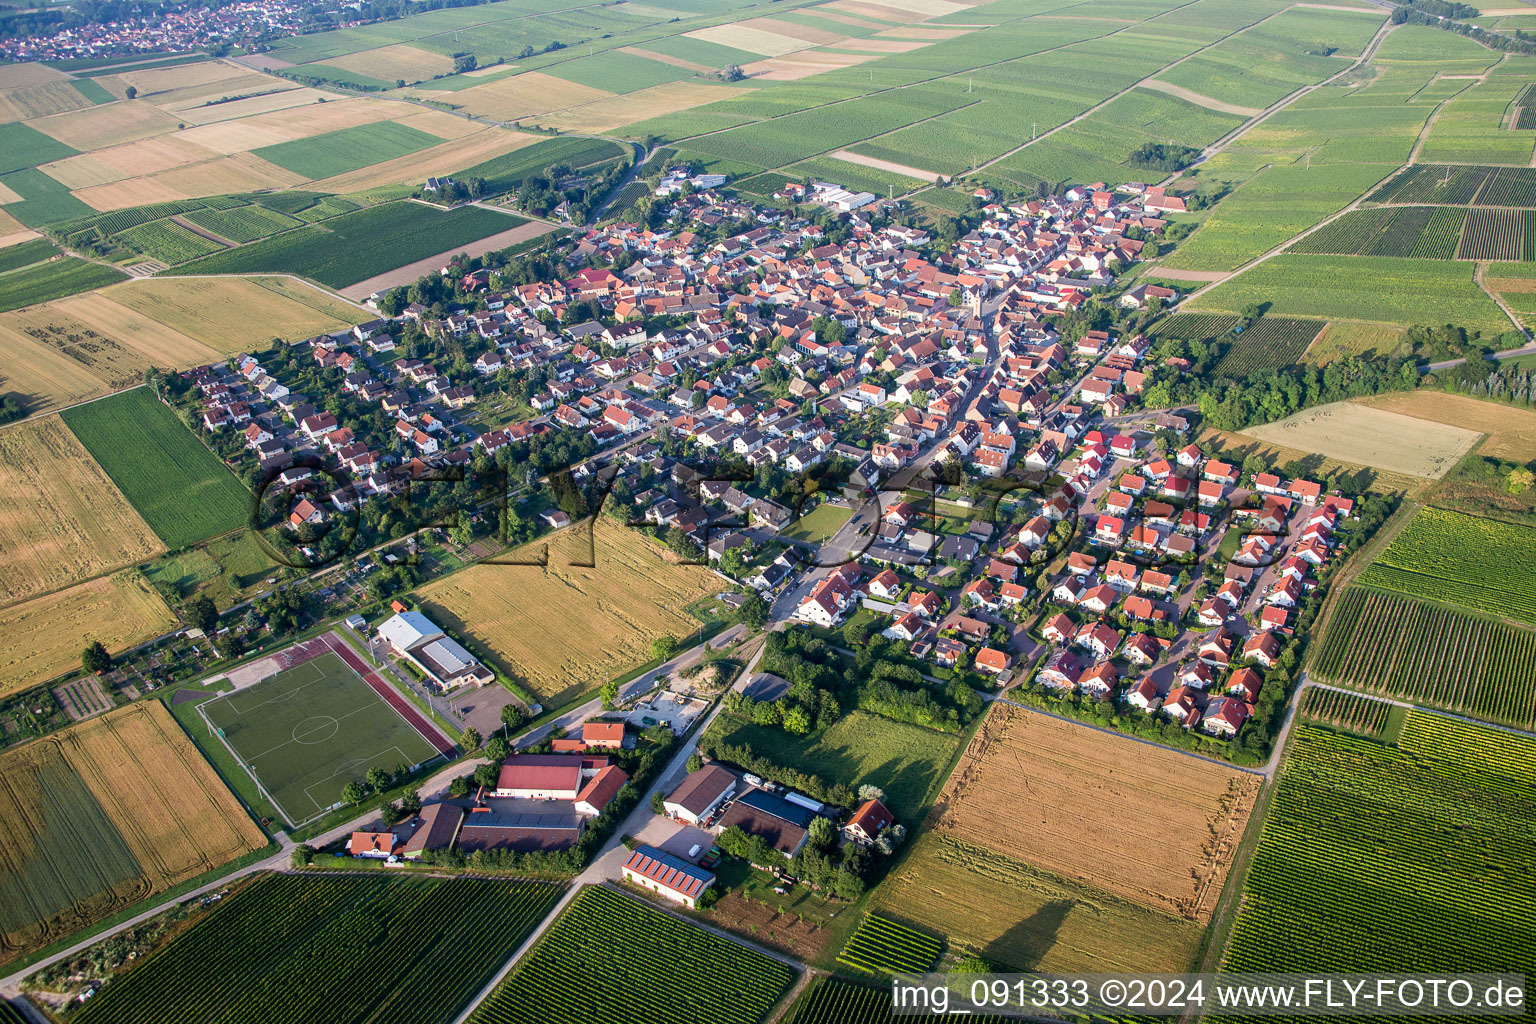 Vue aérienne de Champs agricoles et surfaces utilisables à Udenheim dans le département Rhénanie-Palatinat, Allemagne